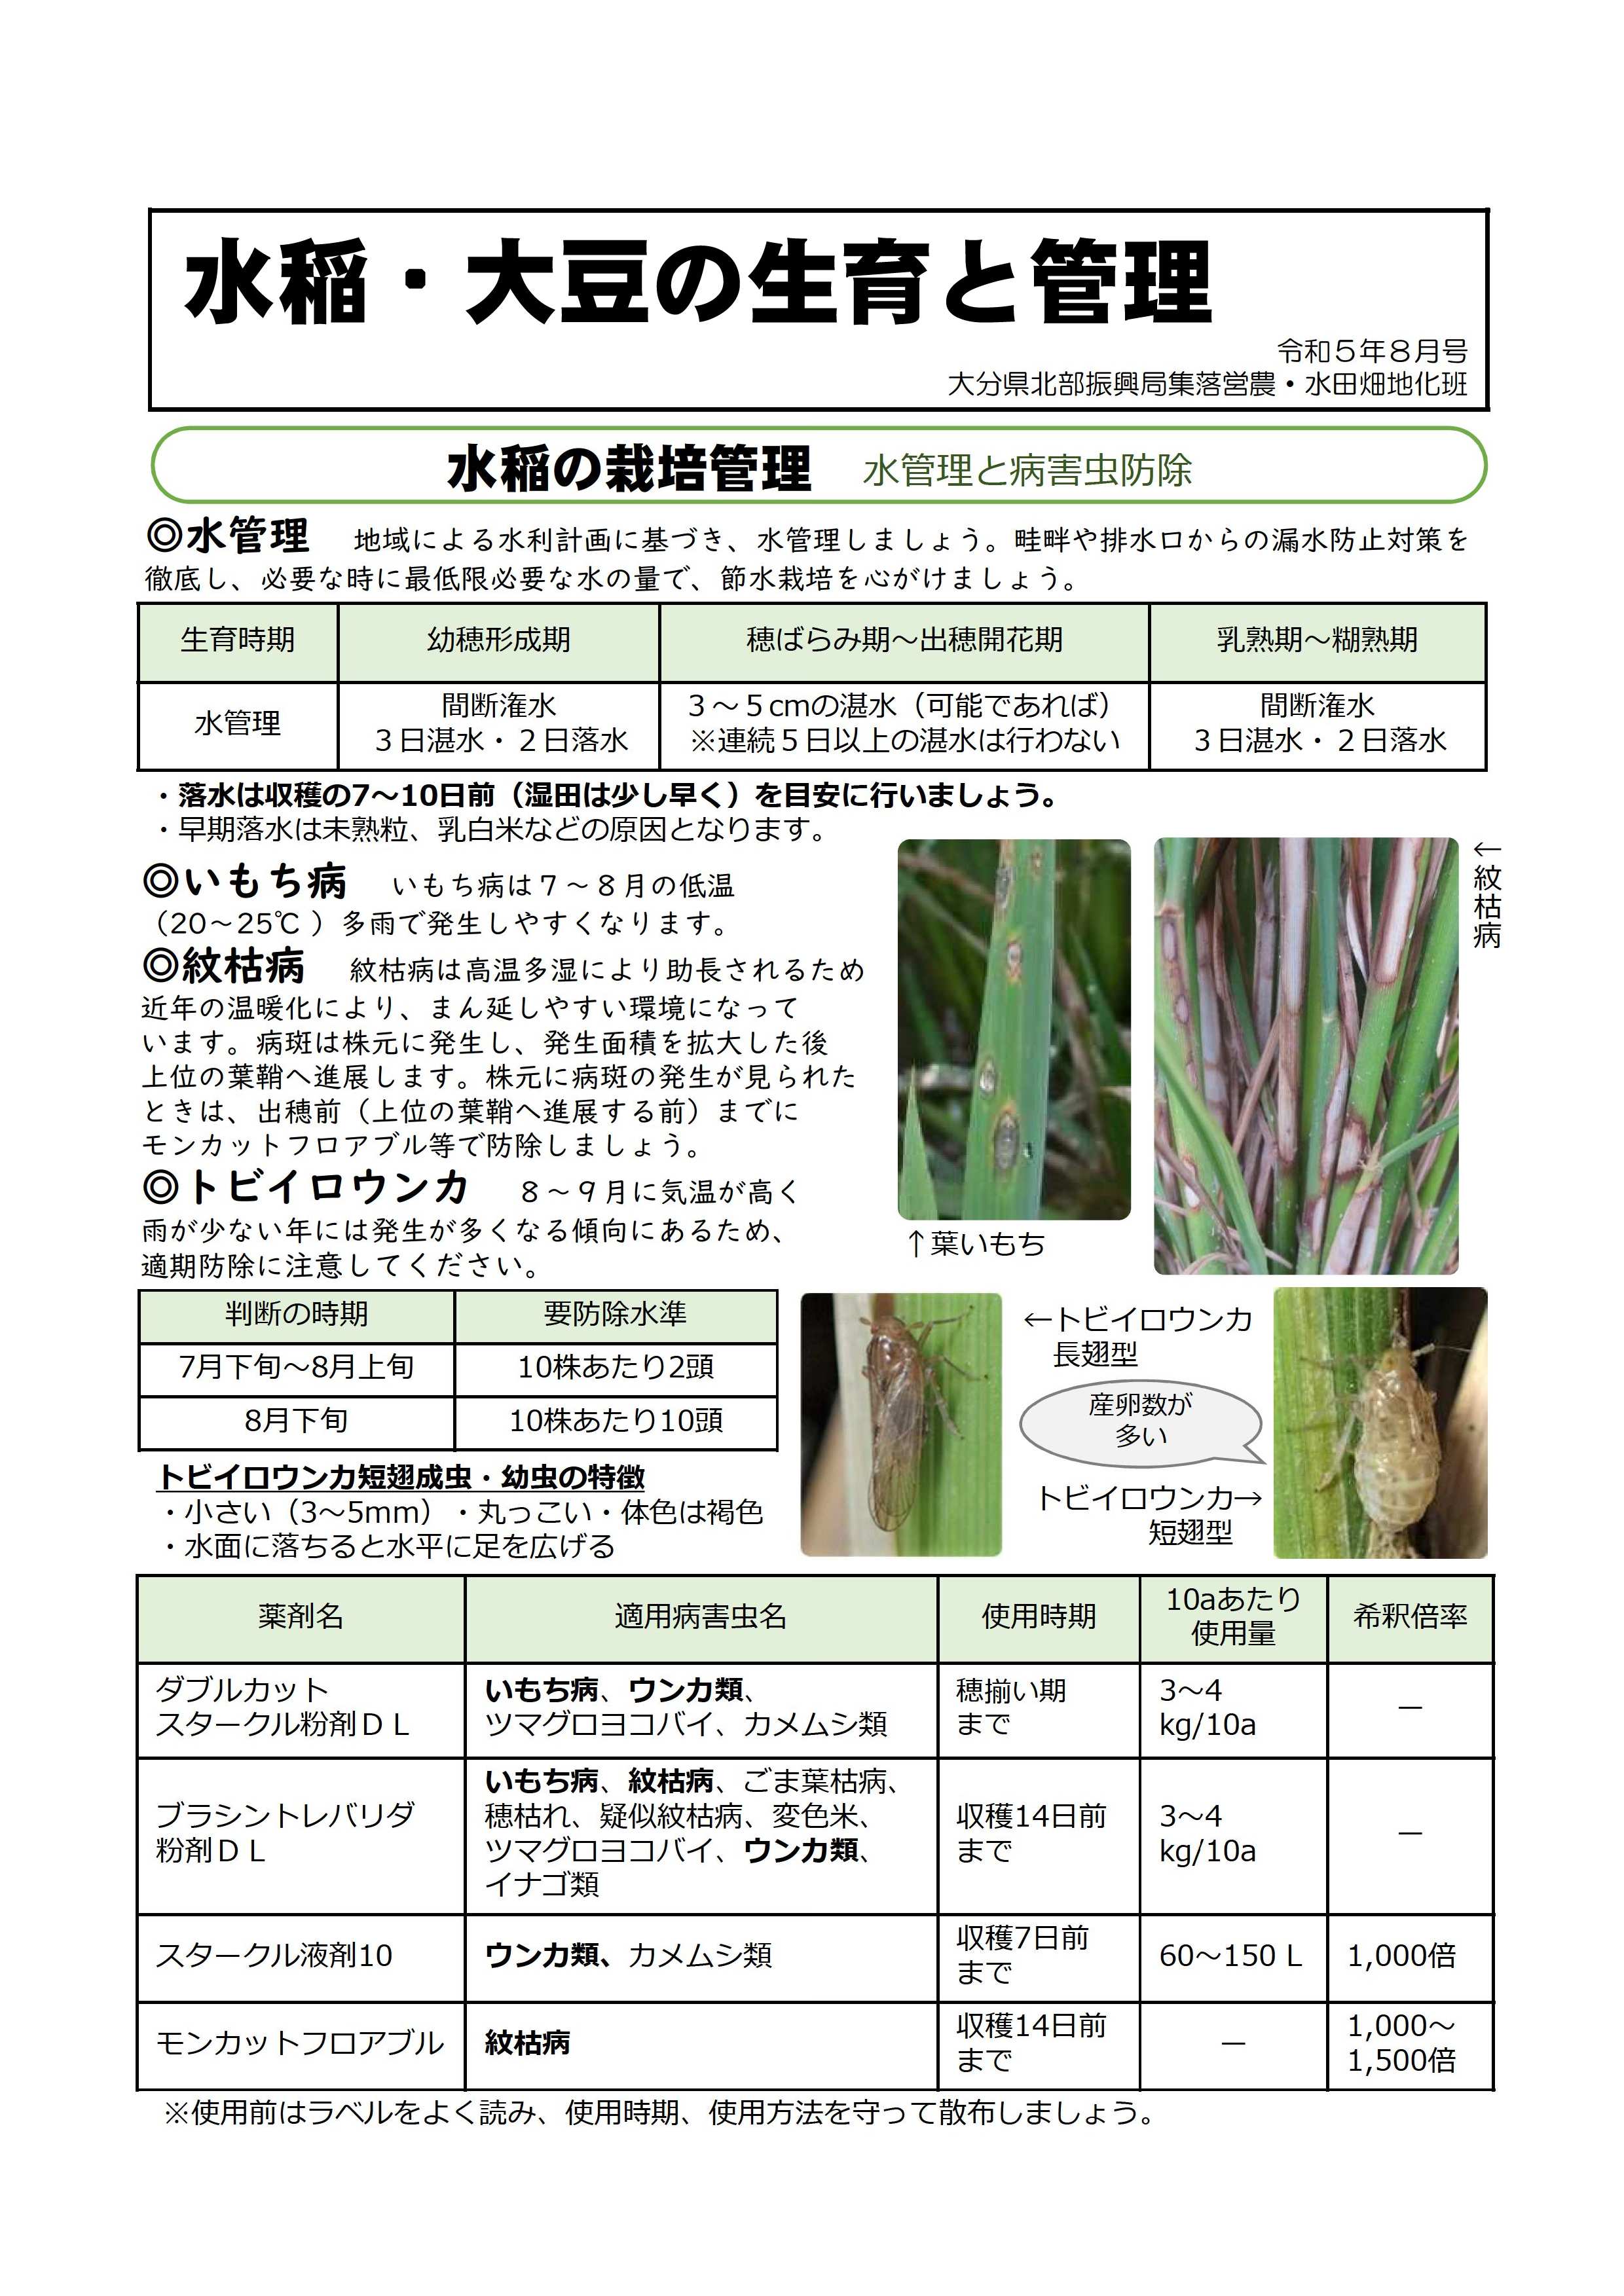 水稲の栽培管理